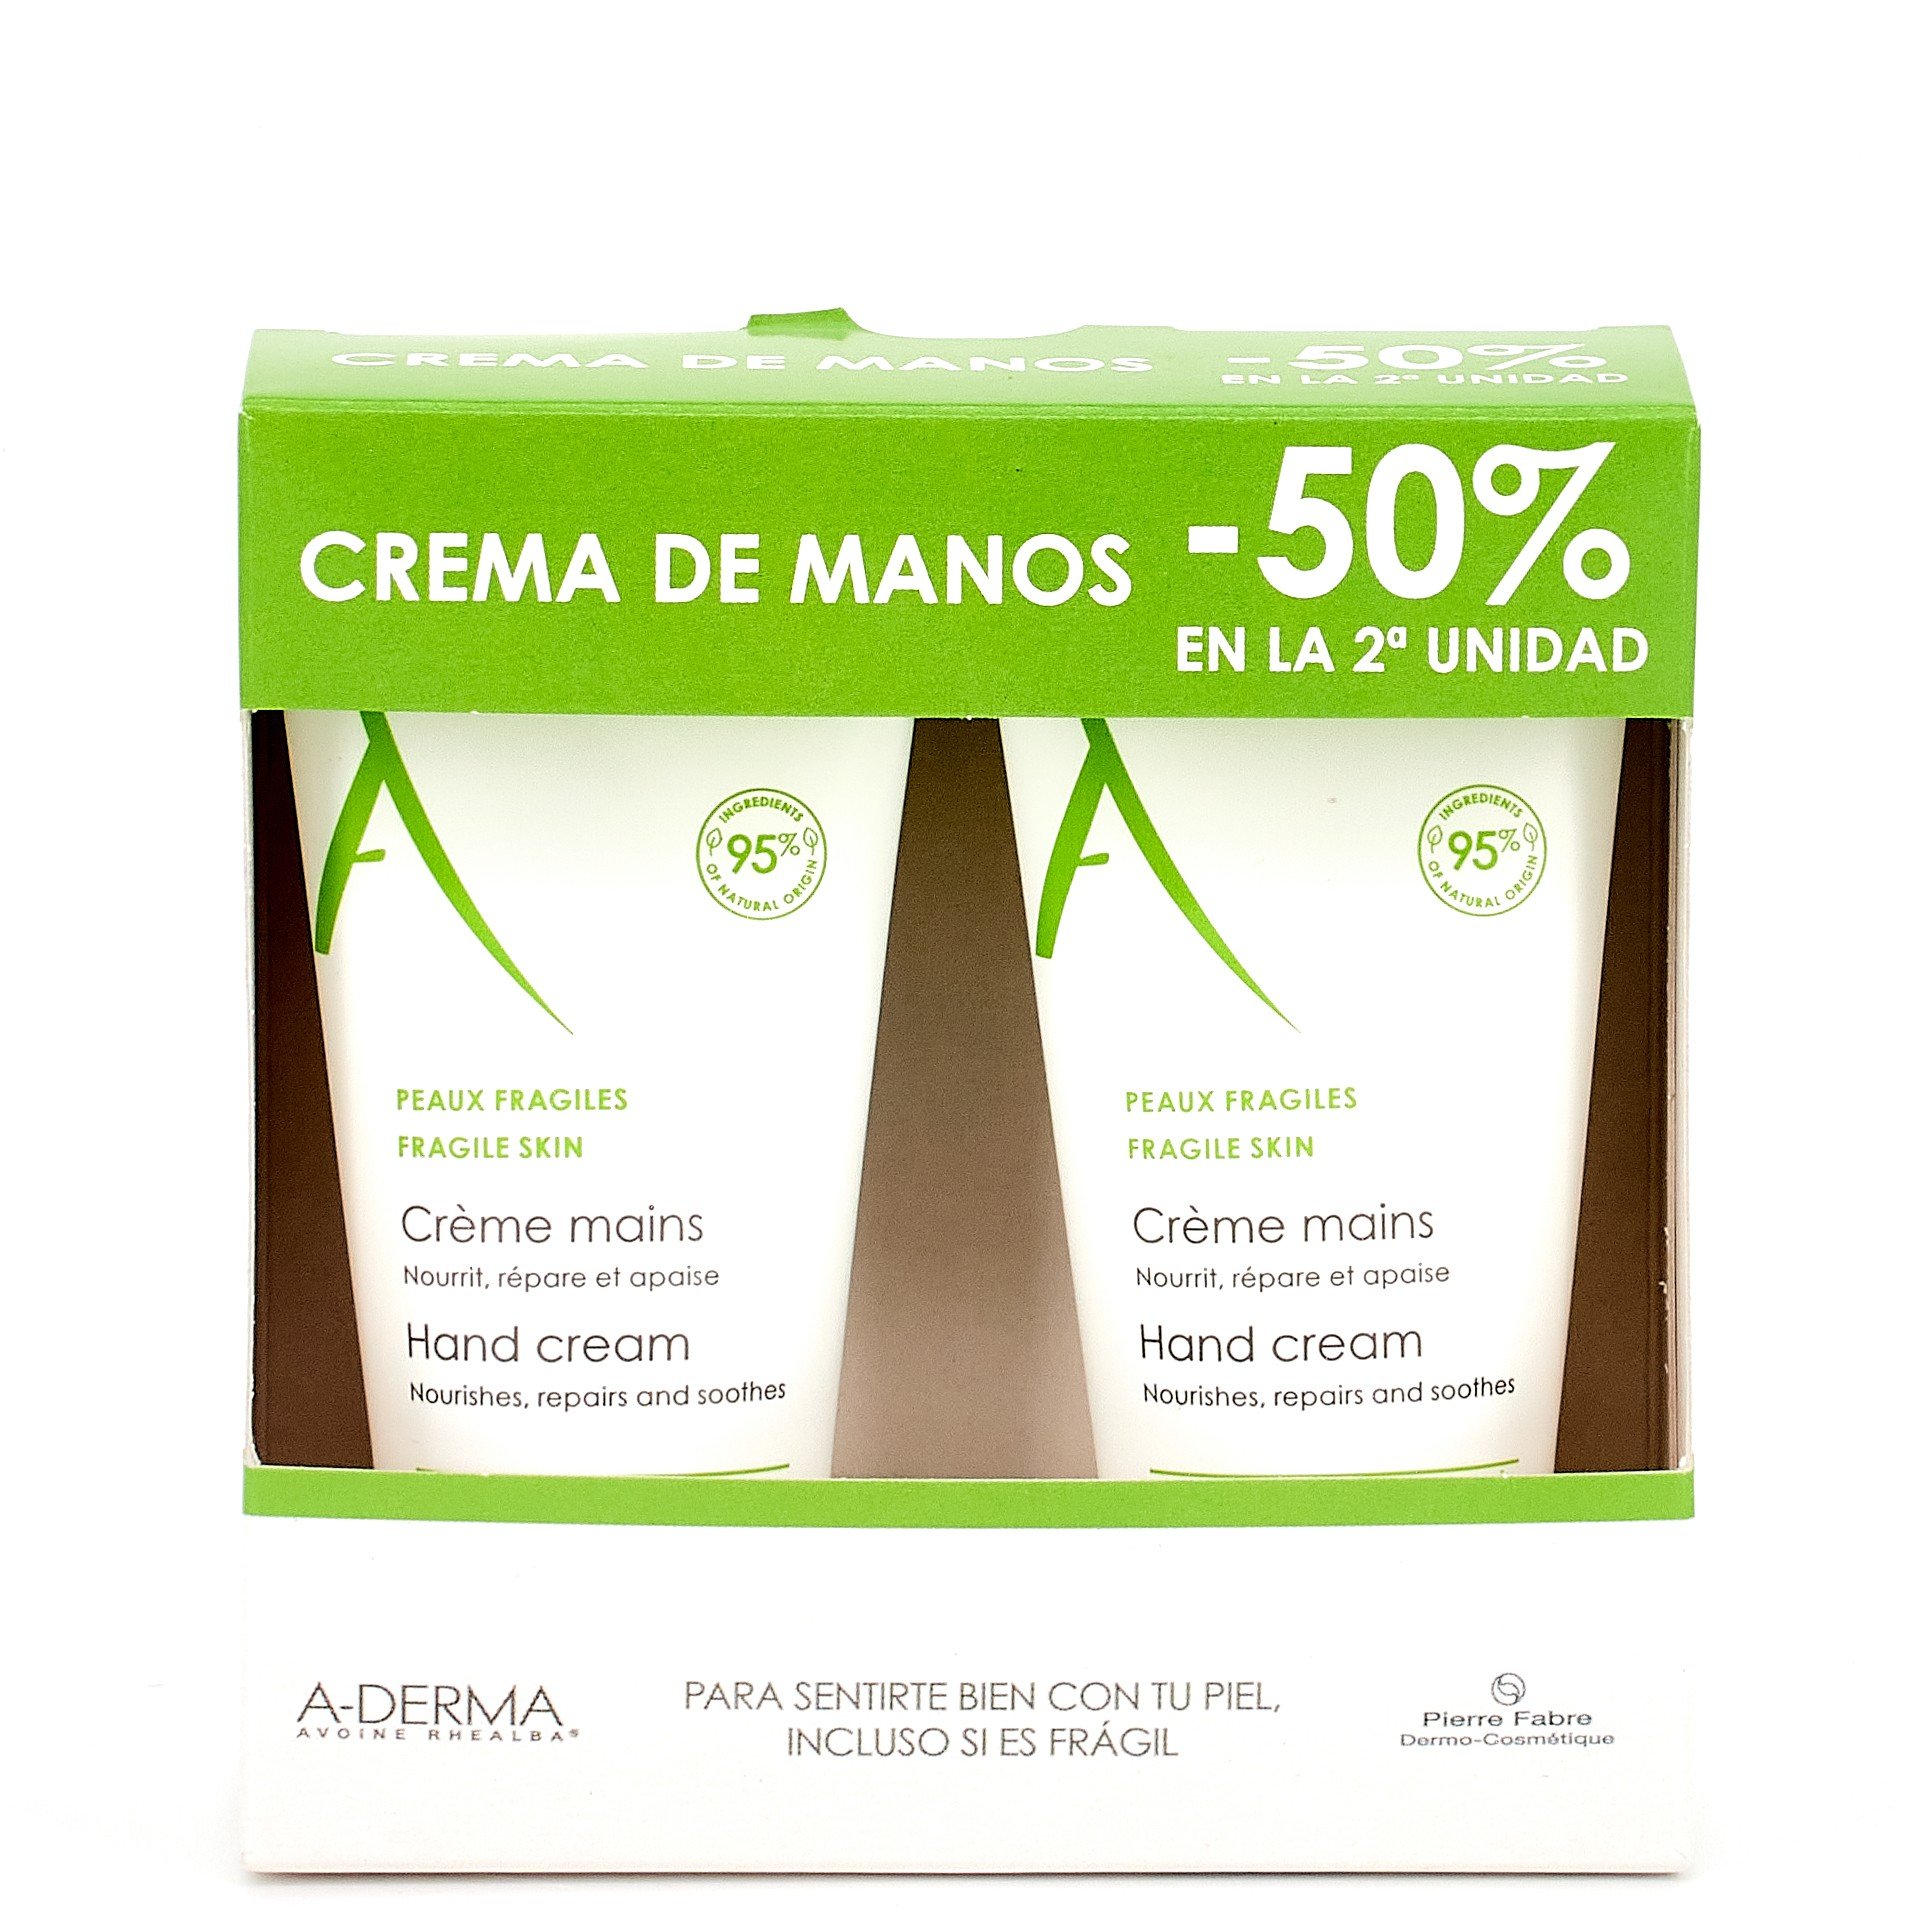 A-Derma Crema de manos Duplo, 2x50ml.